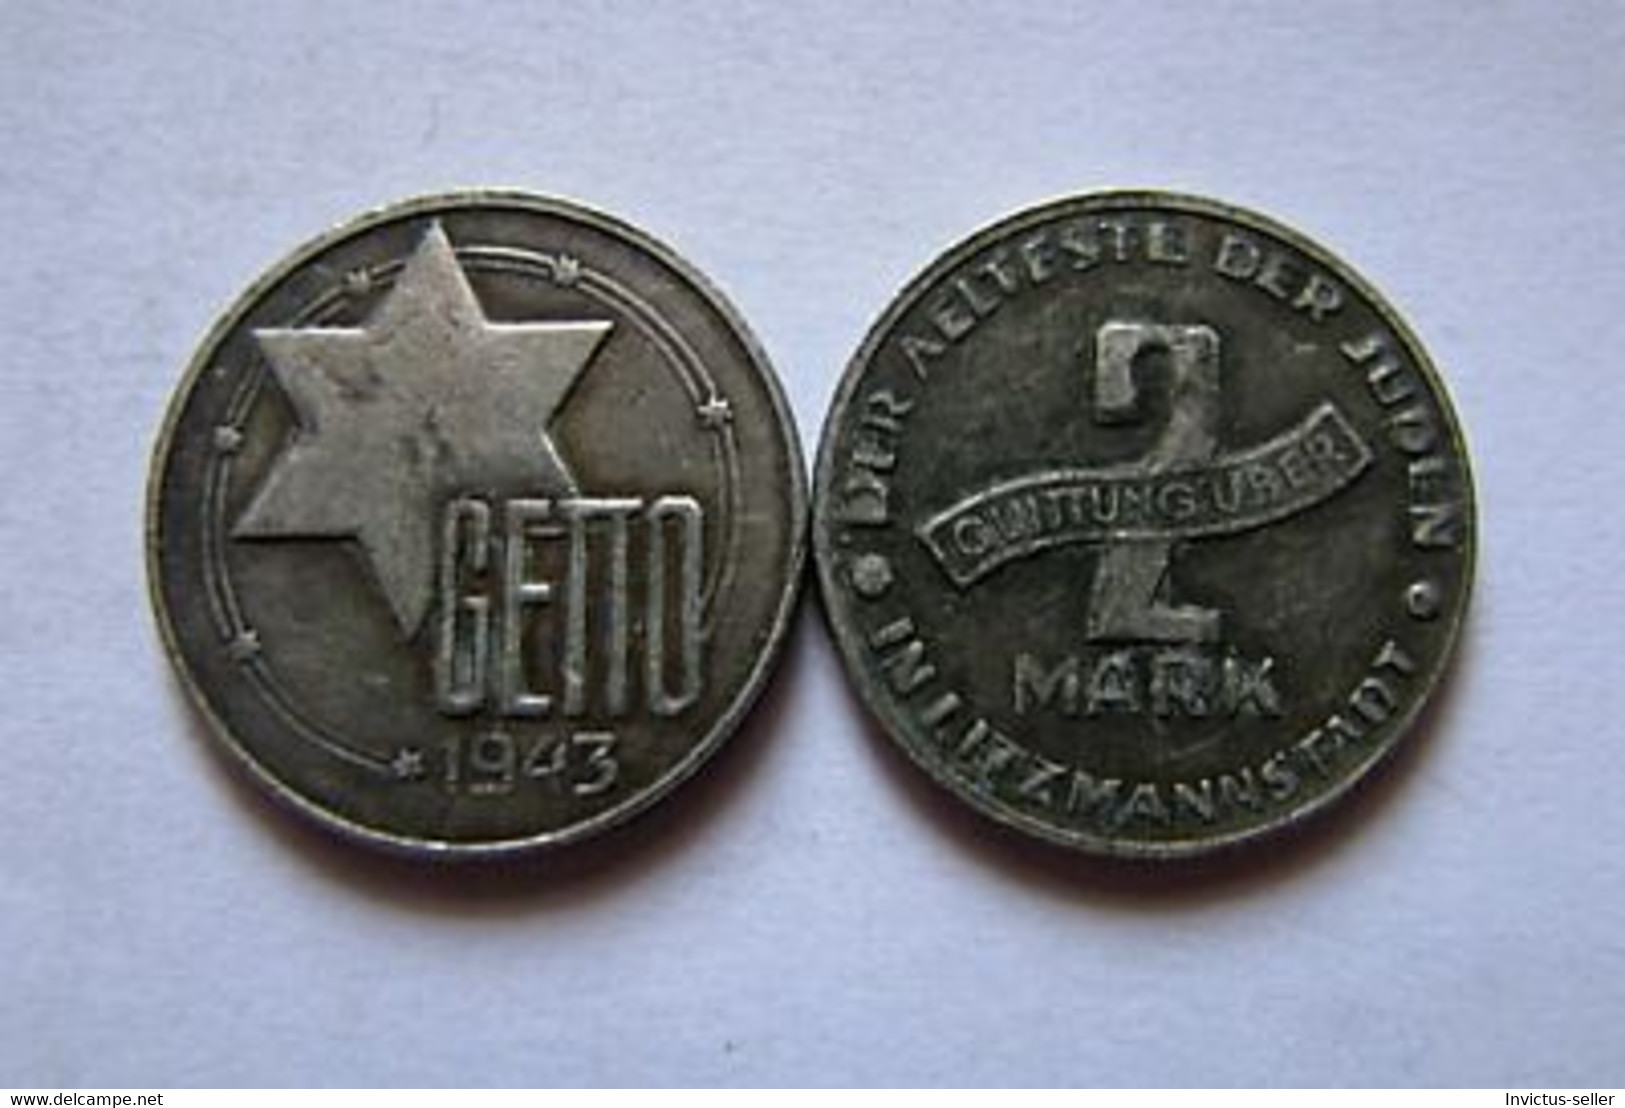 GETTO 2 MARK 1943 LITZMANNSTADT GERMAN COIN MONETA GHETTO EBREI JUDE JUIFE Auschwitz JUDE EBREI GERMANY - Collections